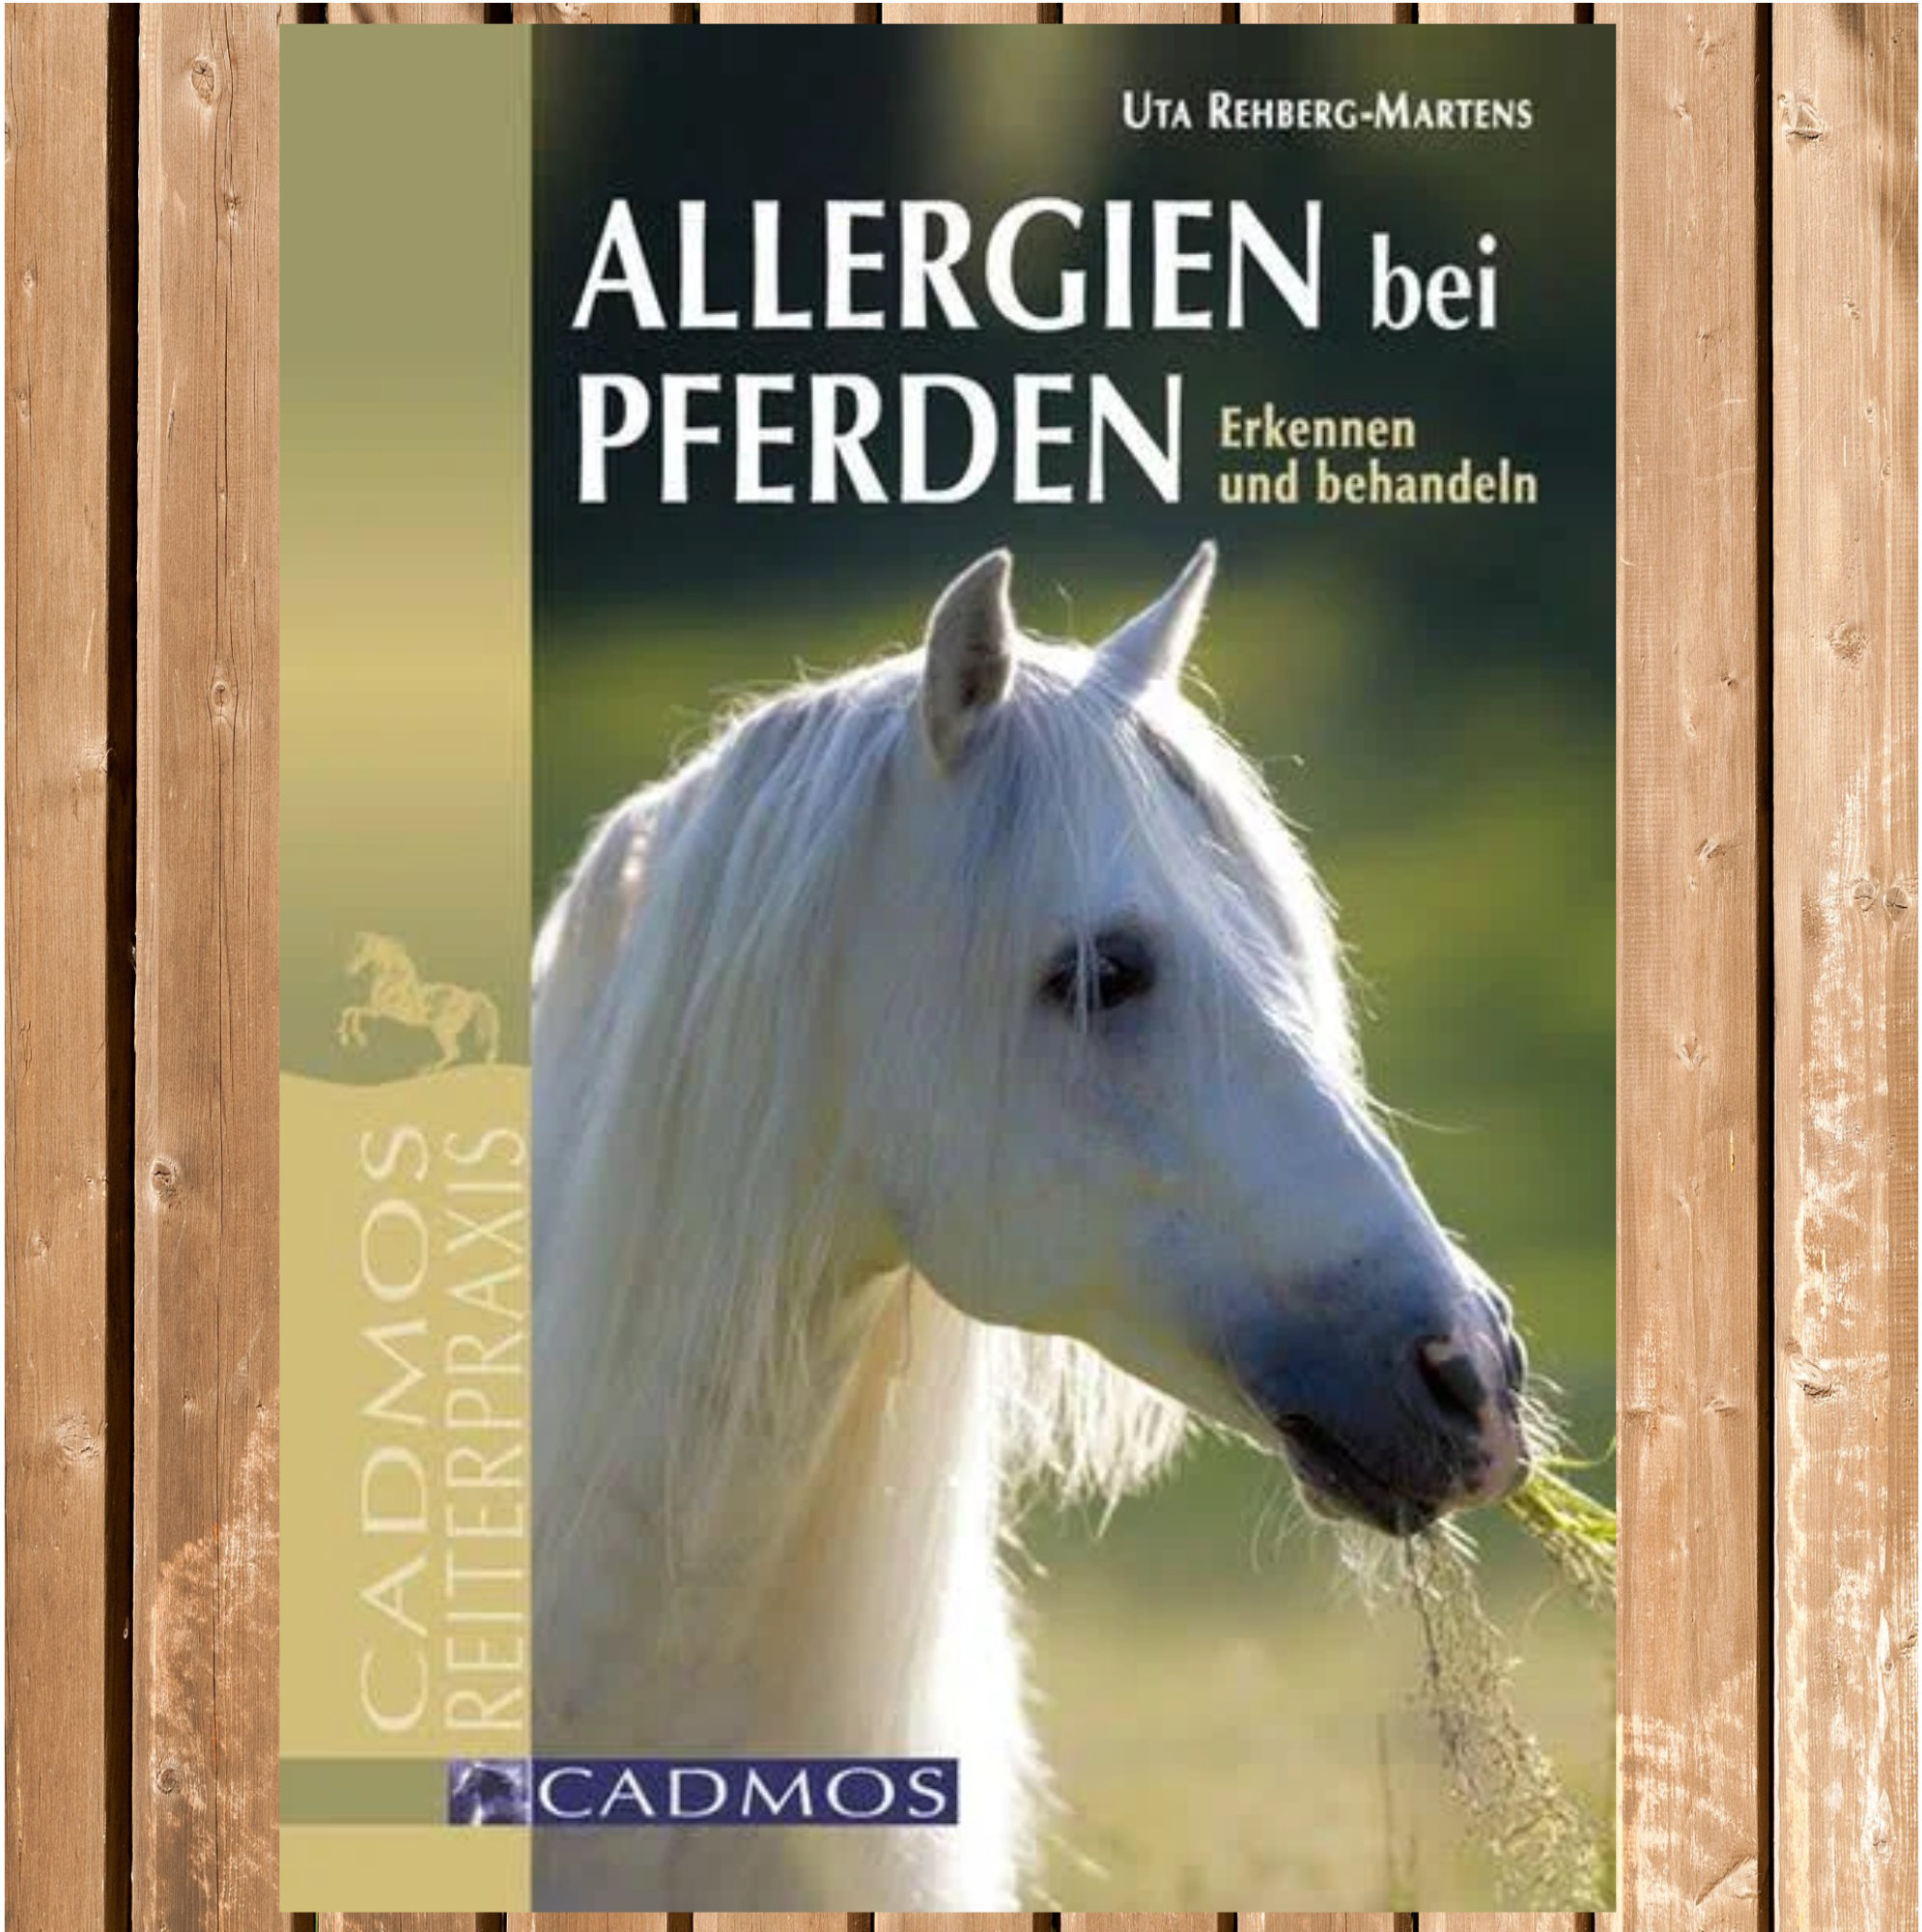 Allergien bei Pferden - Erkennen und behandeln